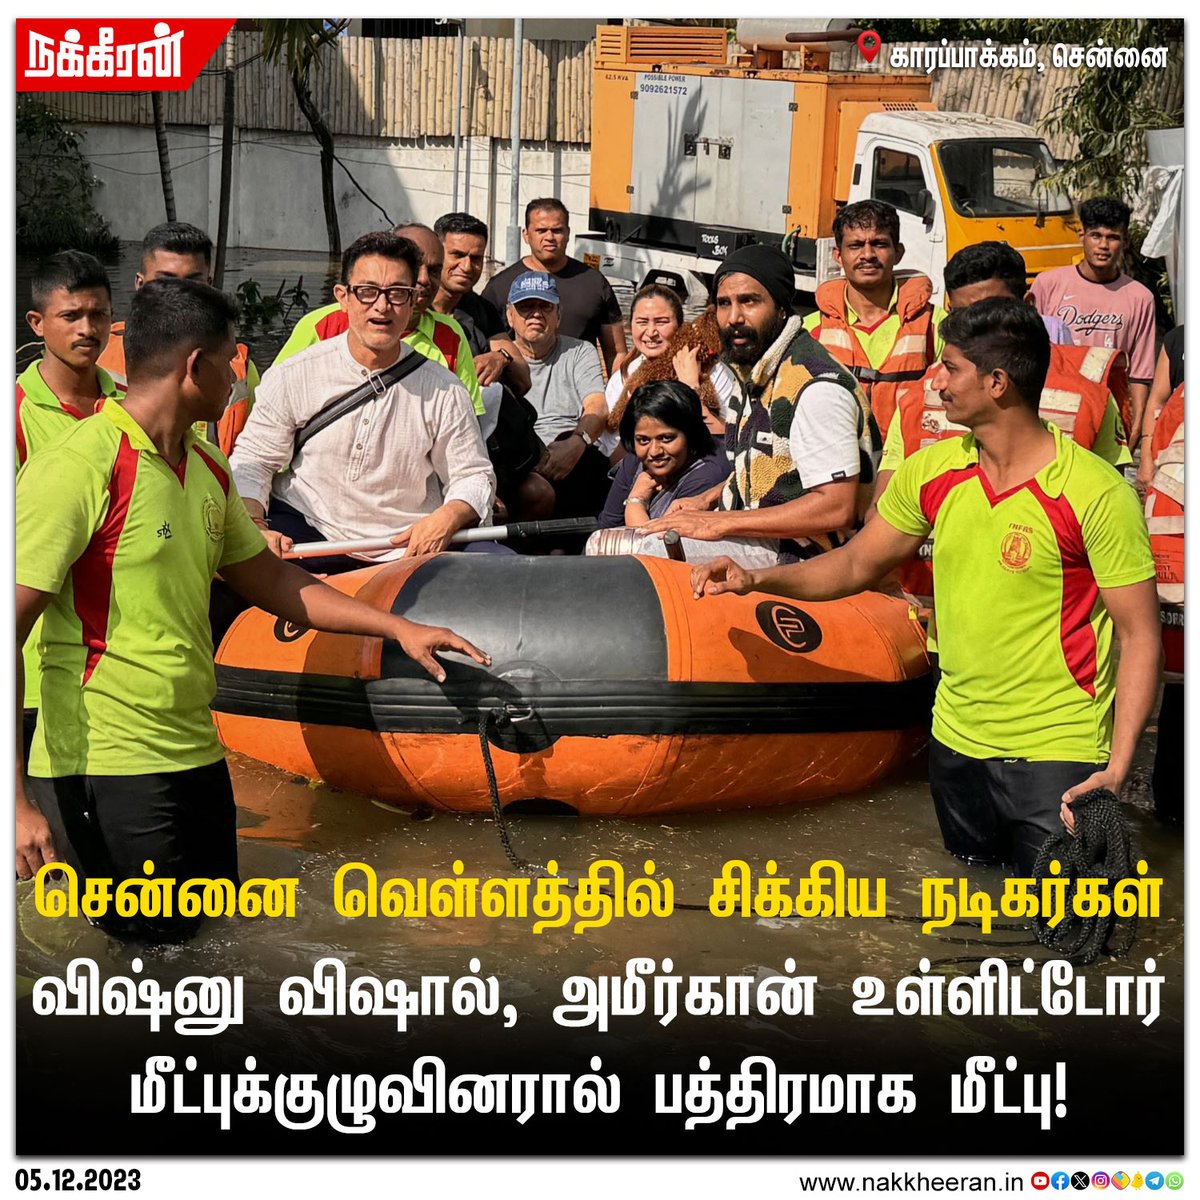 சென்னை வெள்ளத்தில் சிக்கிய நடிகர்கள் விஷ்னு விஷால், அமீர்கான்..! #CycloneMichuang #ChennaiFloods #ChennaiRains #Nakkheeran